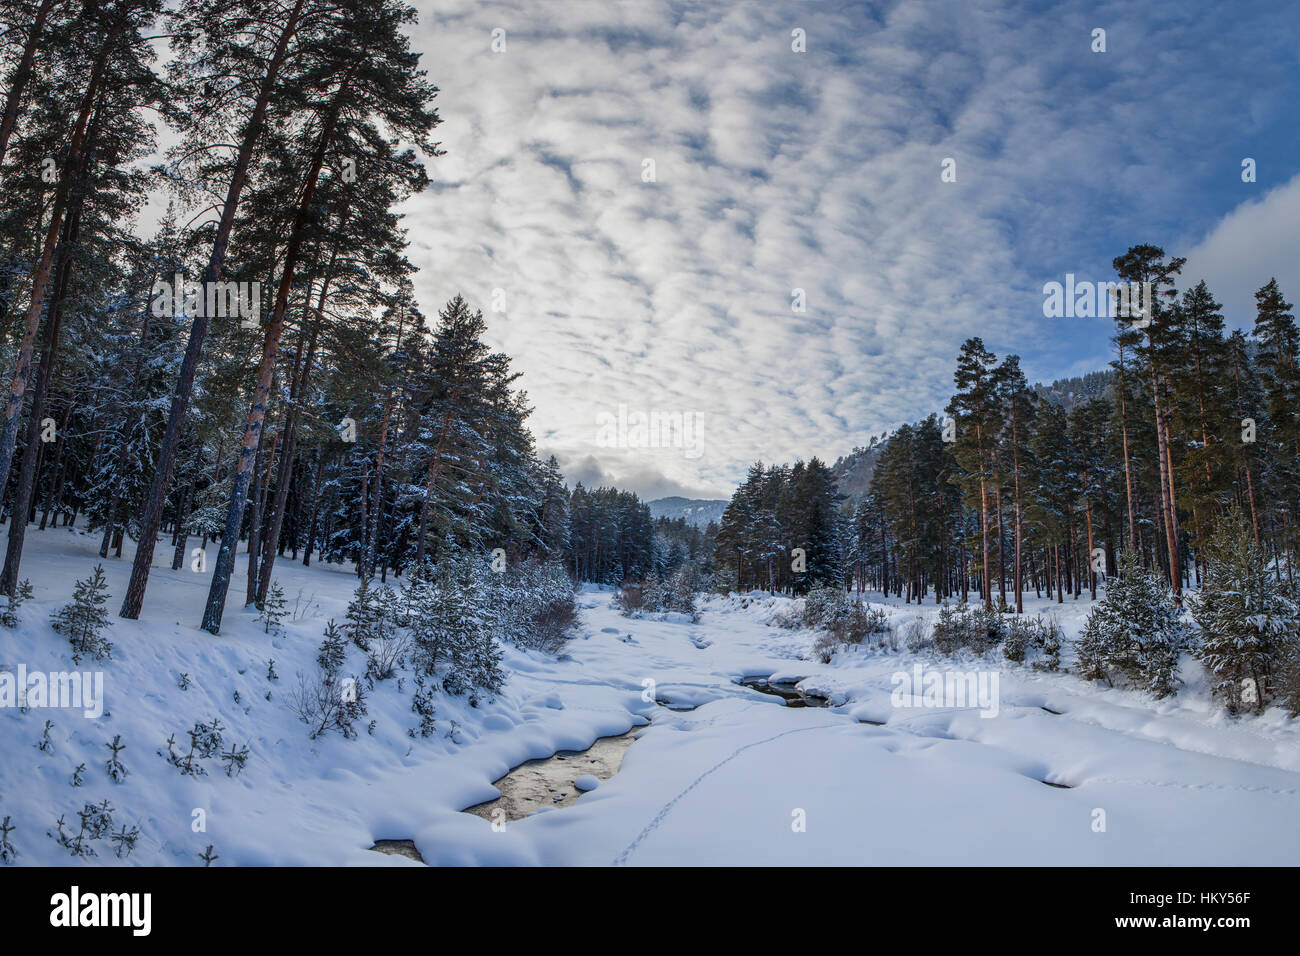 Paysage de montagne enneigée avec de hauts pins et l'eau froide à la fin d'une journée d'hiver. Banque D'Images